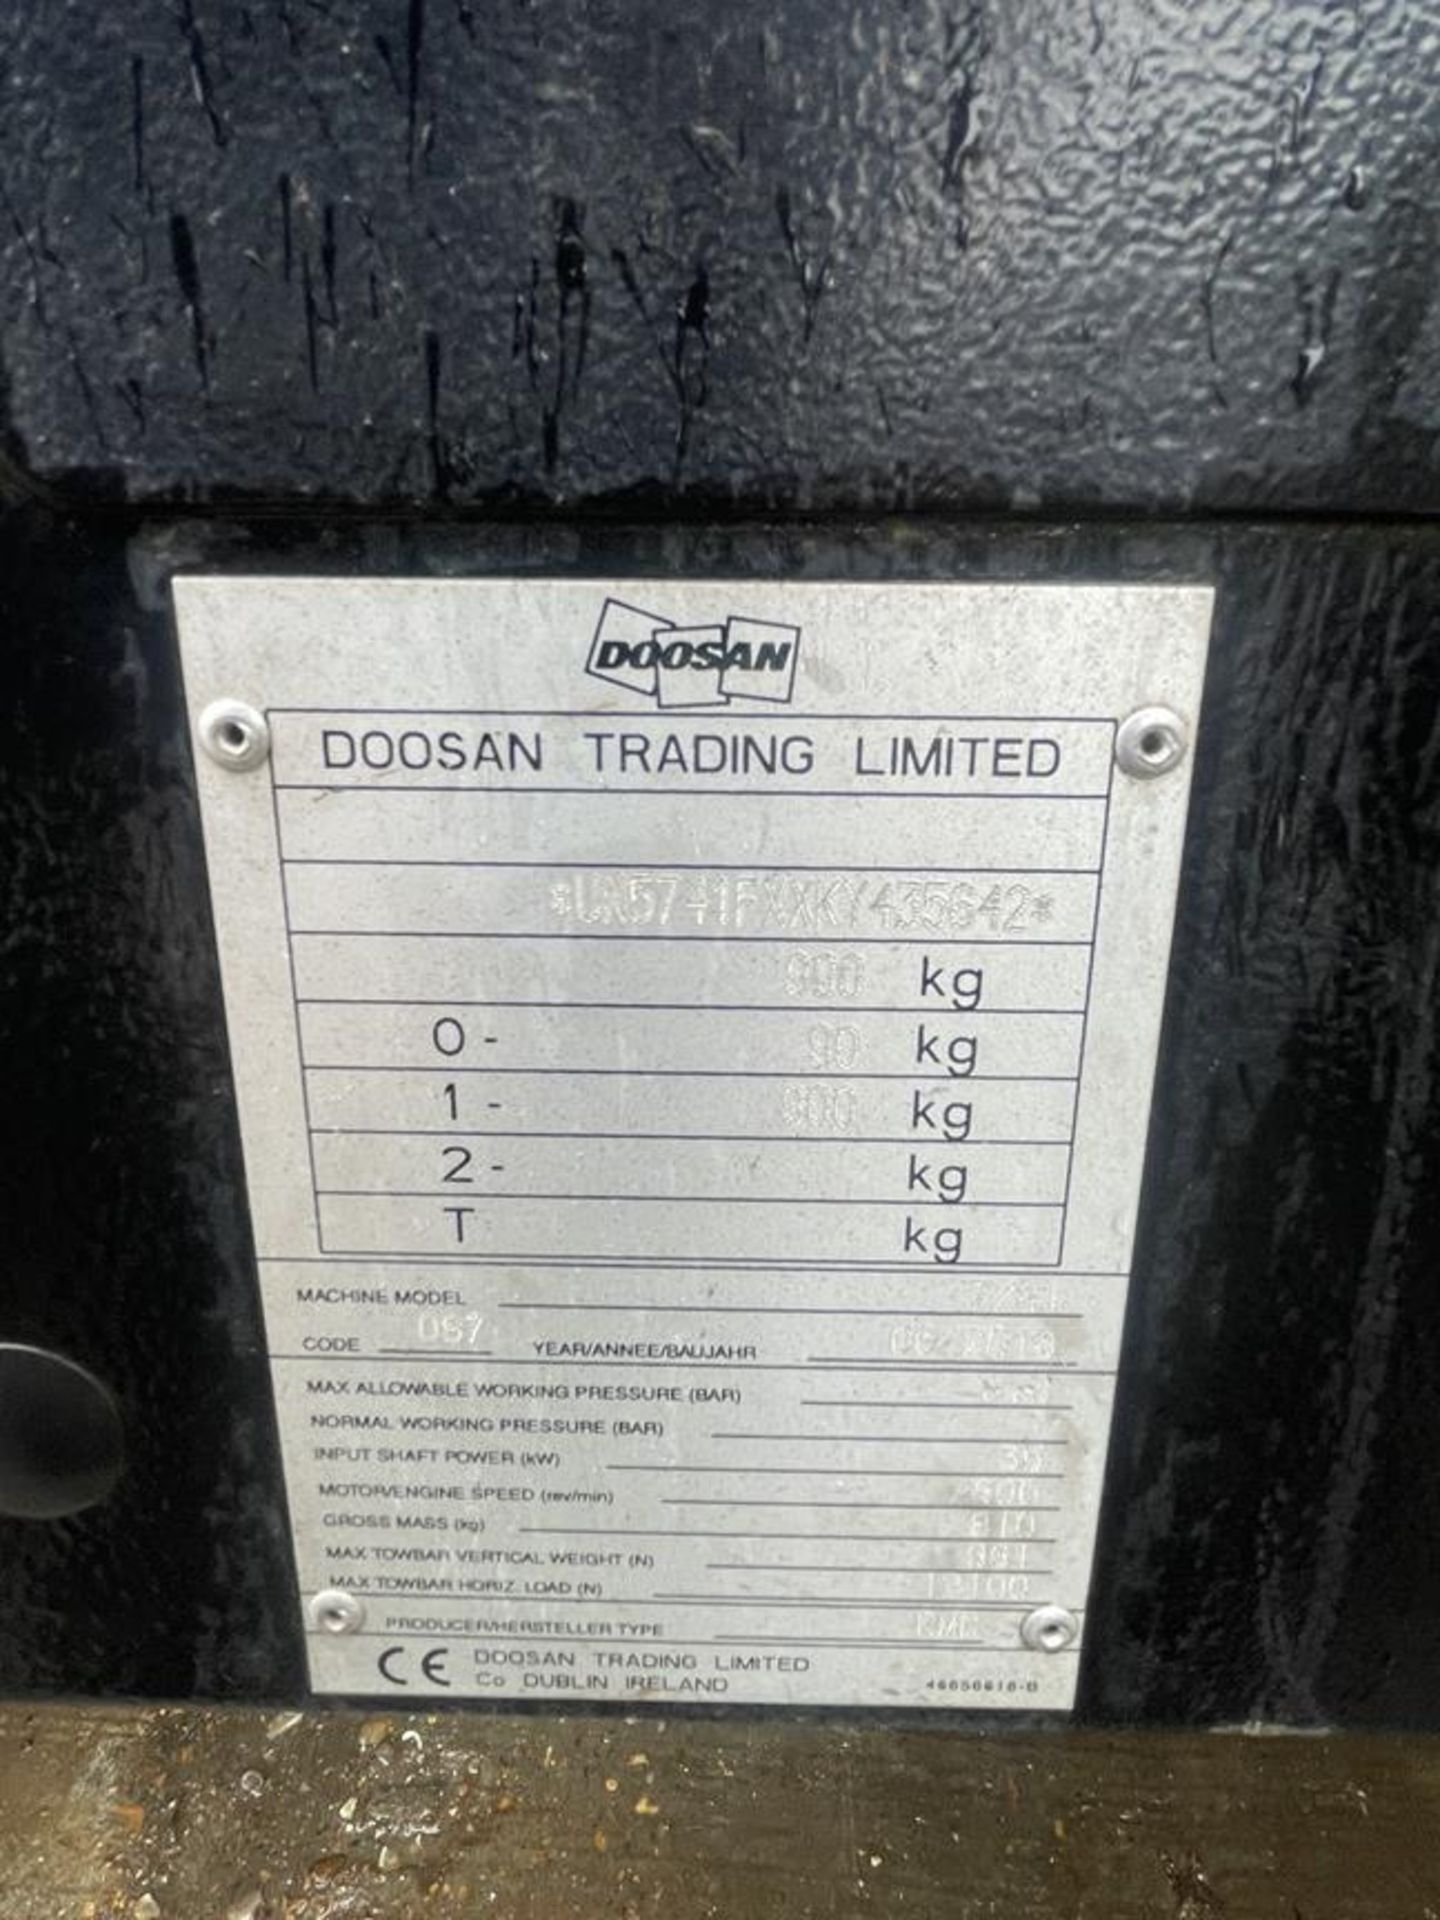 Doosan Model 7/41 Towable 7-Bar Air Compressor S/No. UN5741FXXKY435642, Run Hours: 207.1 - Bild 6 aus 7